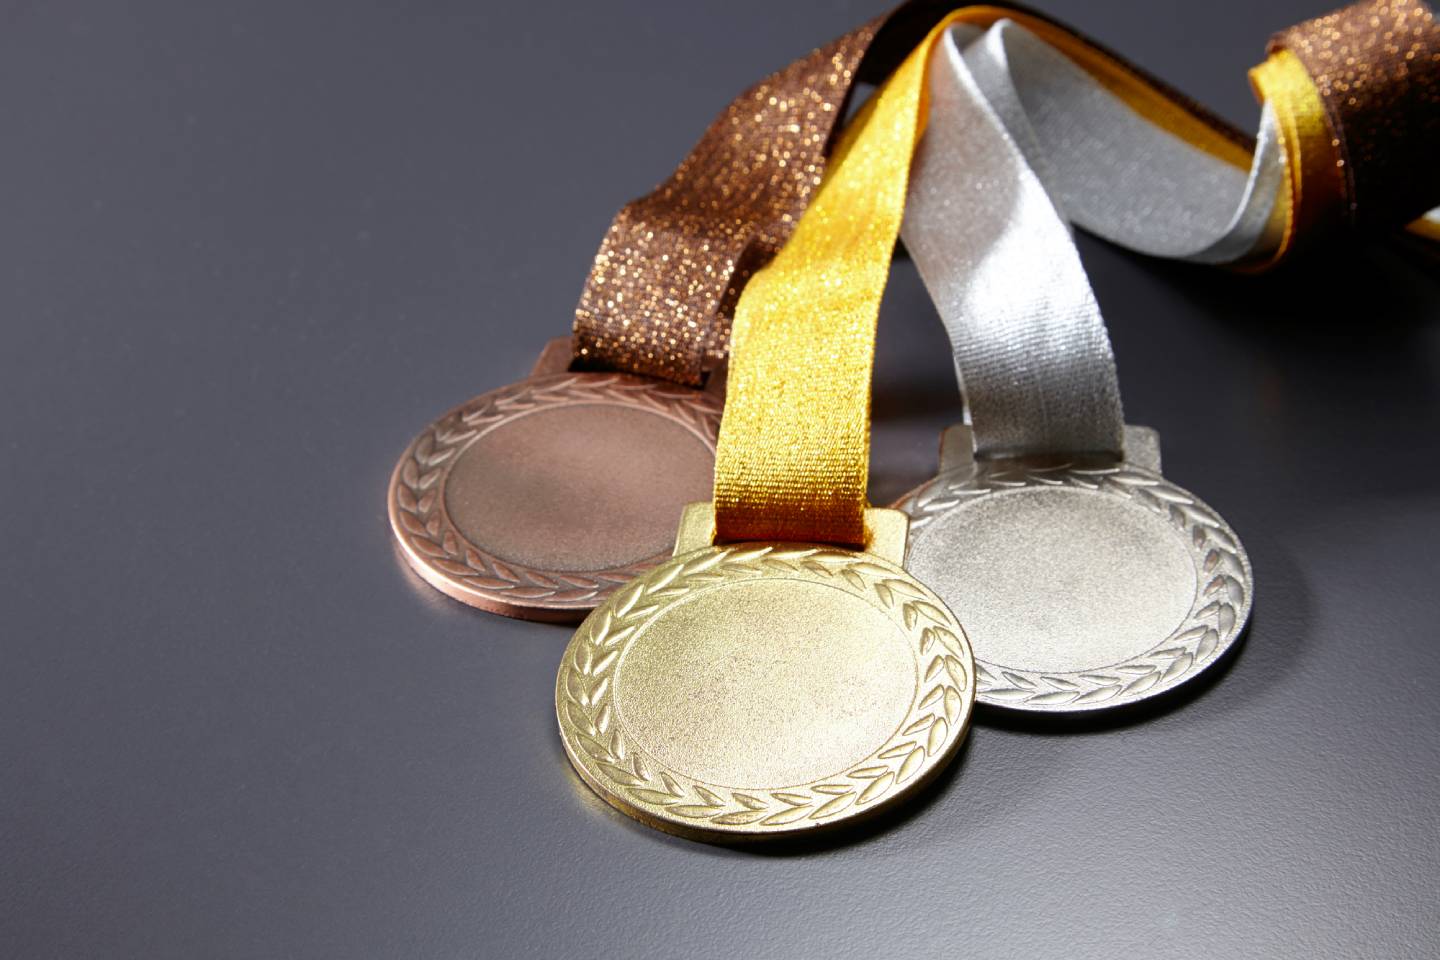 Новости спорта / Новости спорта в мире и Казахстане / Чемпионат мира: казахстанский гимнаст завоевал бронзовую медаль